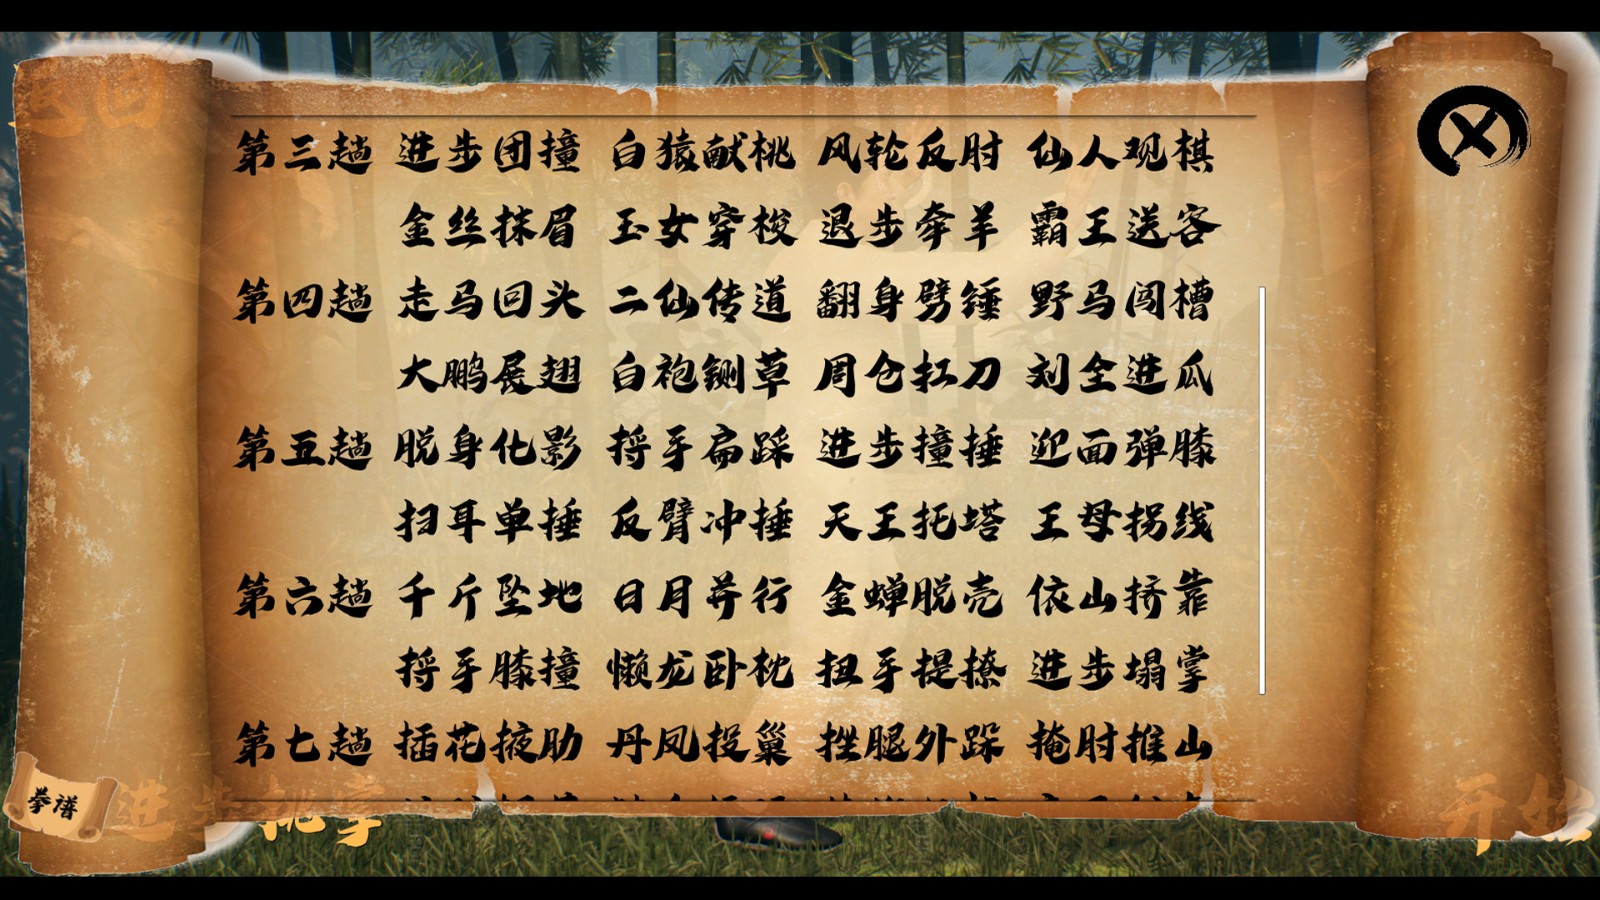 国产武术教学软件《中国传统武术 八卦掌 六十四手》上架Steam